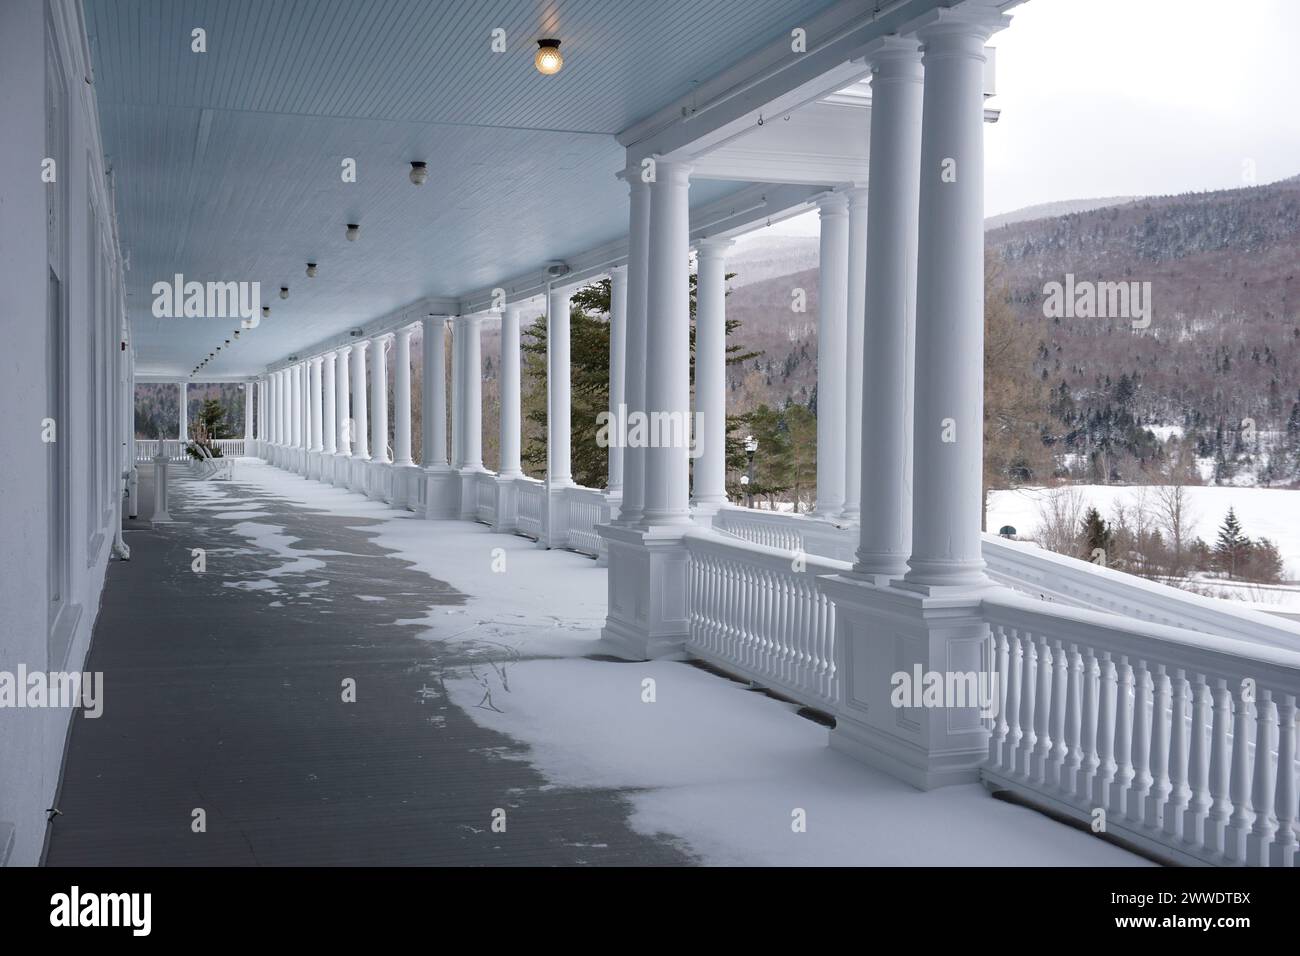 The Omni Mount Washington Hotel, New Hampshire Stock Photo